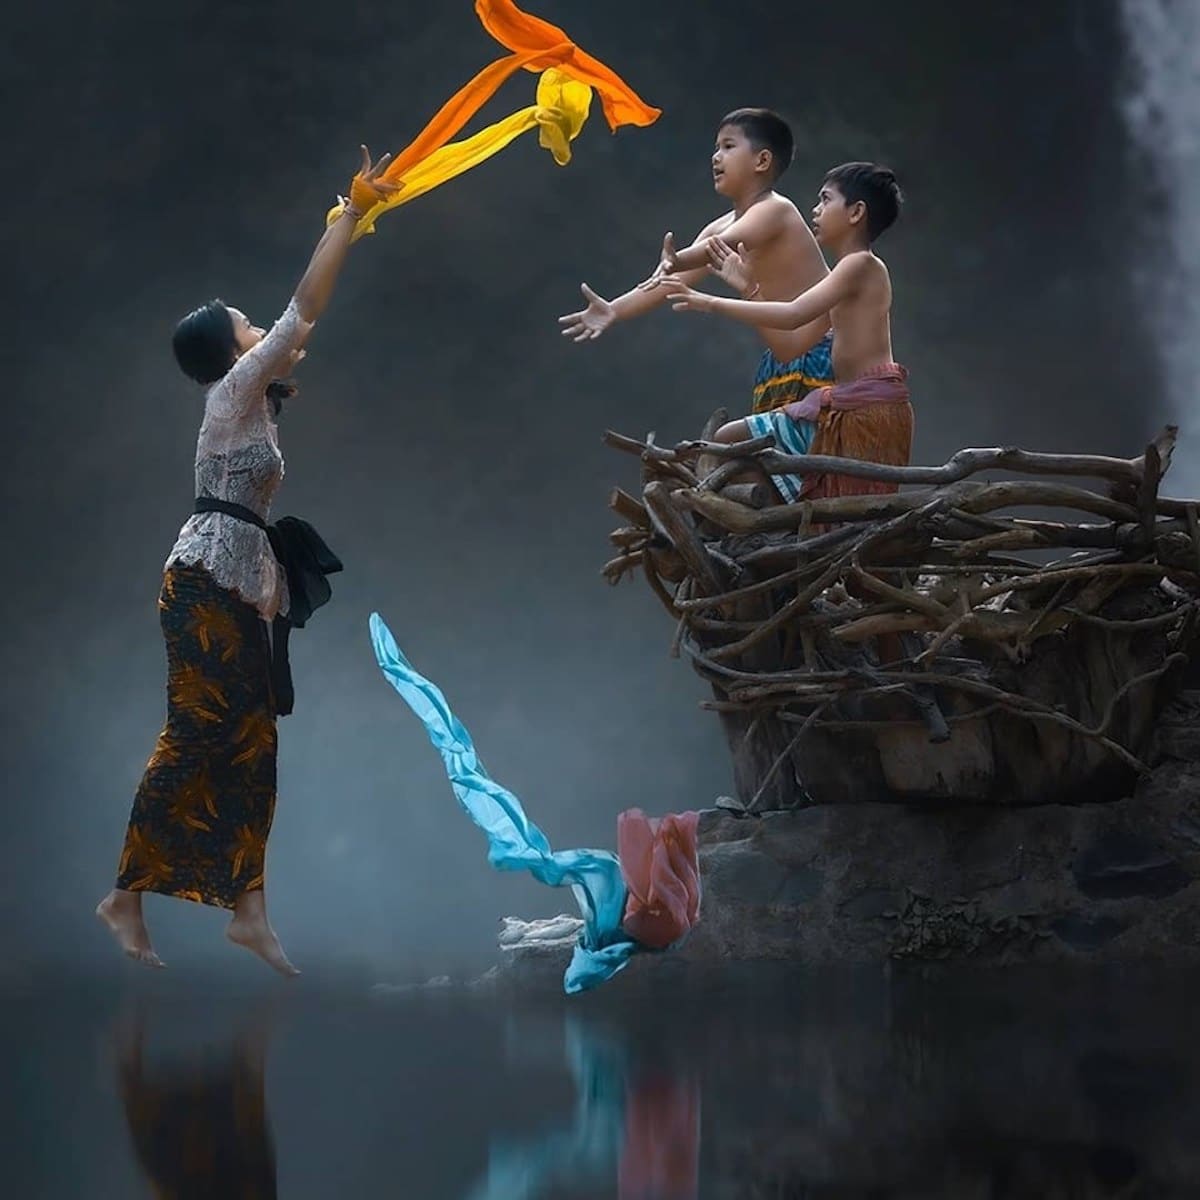 Cinematic Photo of Indonesia by Rarinda Prakarsa